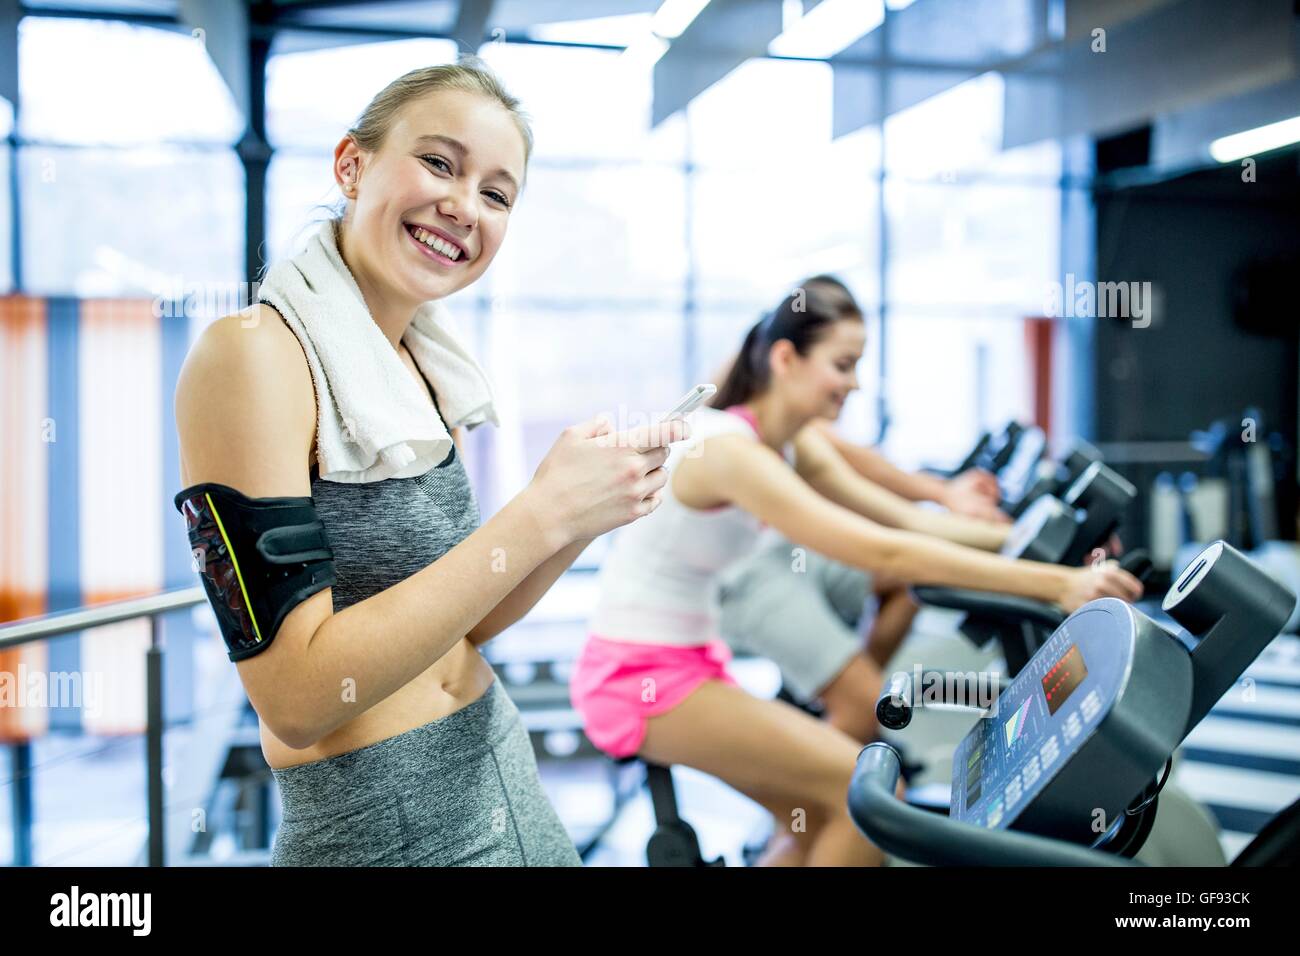 EIGENTUM FREIGEGEBEN. -MODELL VERÖFFENTLICHT. Porträt der jungen Frau SMS auf Handy während der Arbeit im Fitness-Studio, lächelnd. Stockfoto